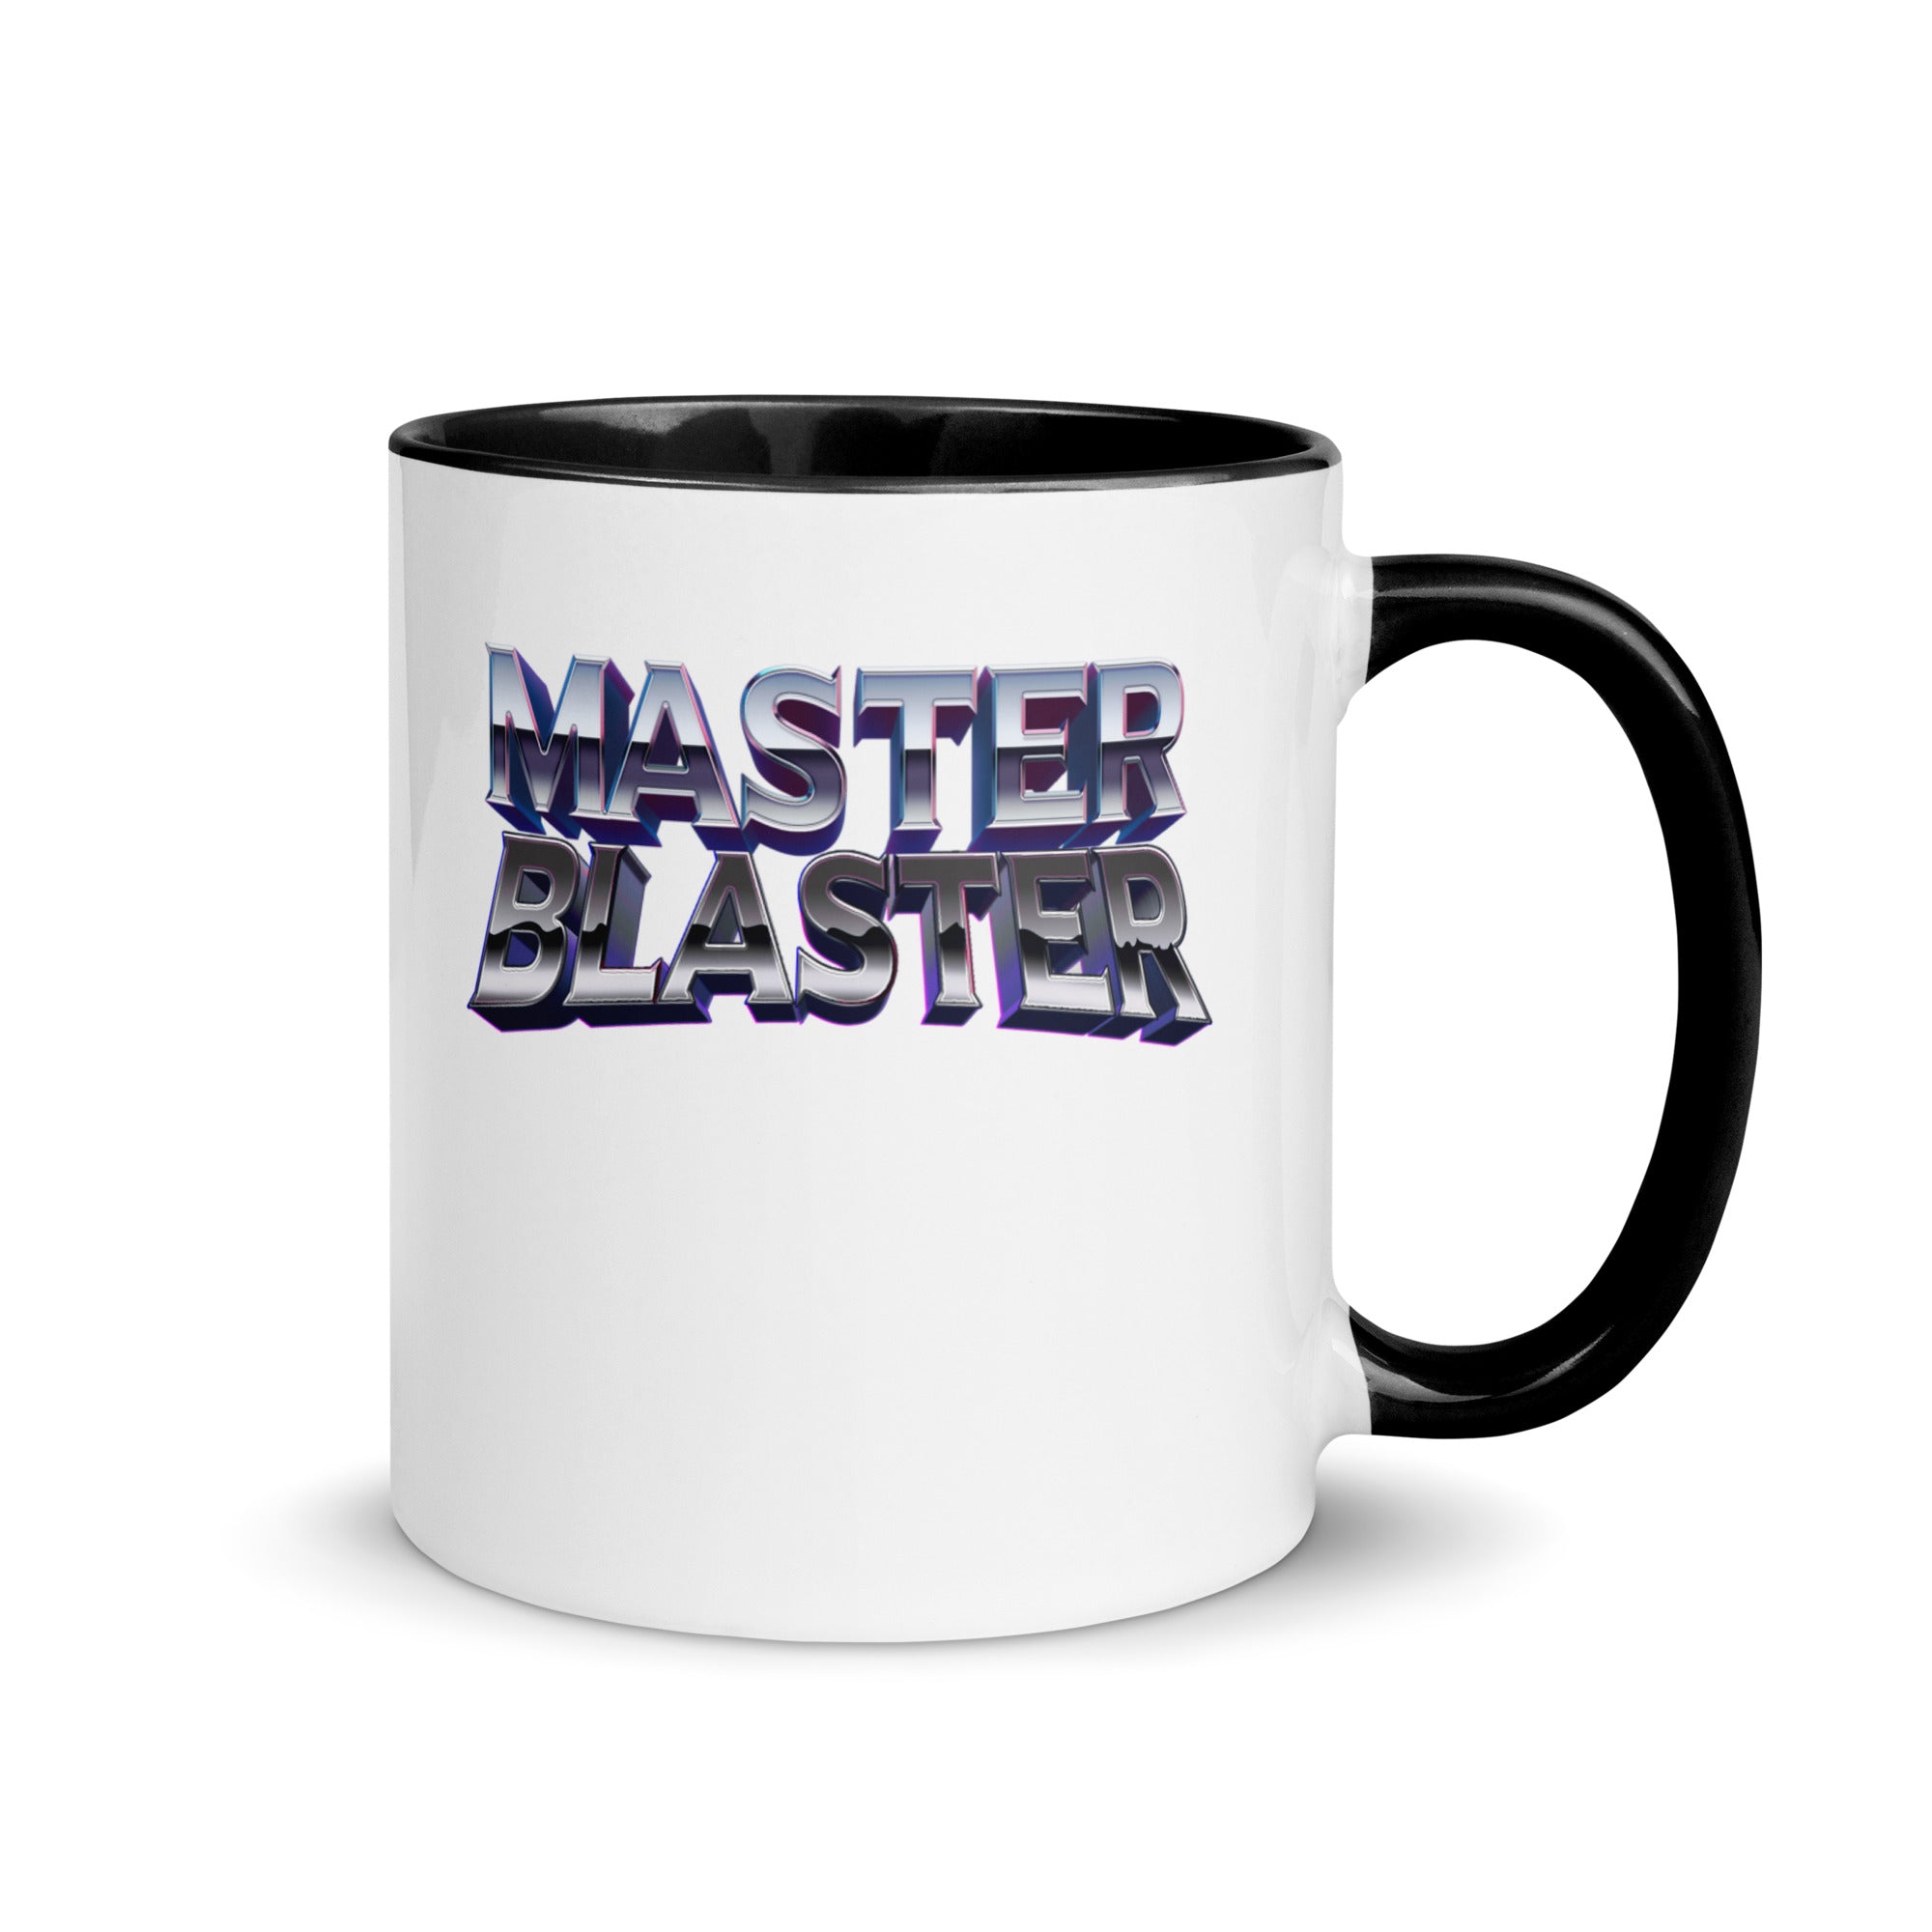 Master Blaster Mug with Color Inside